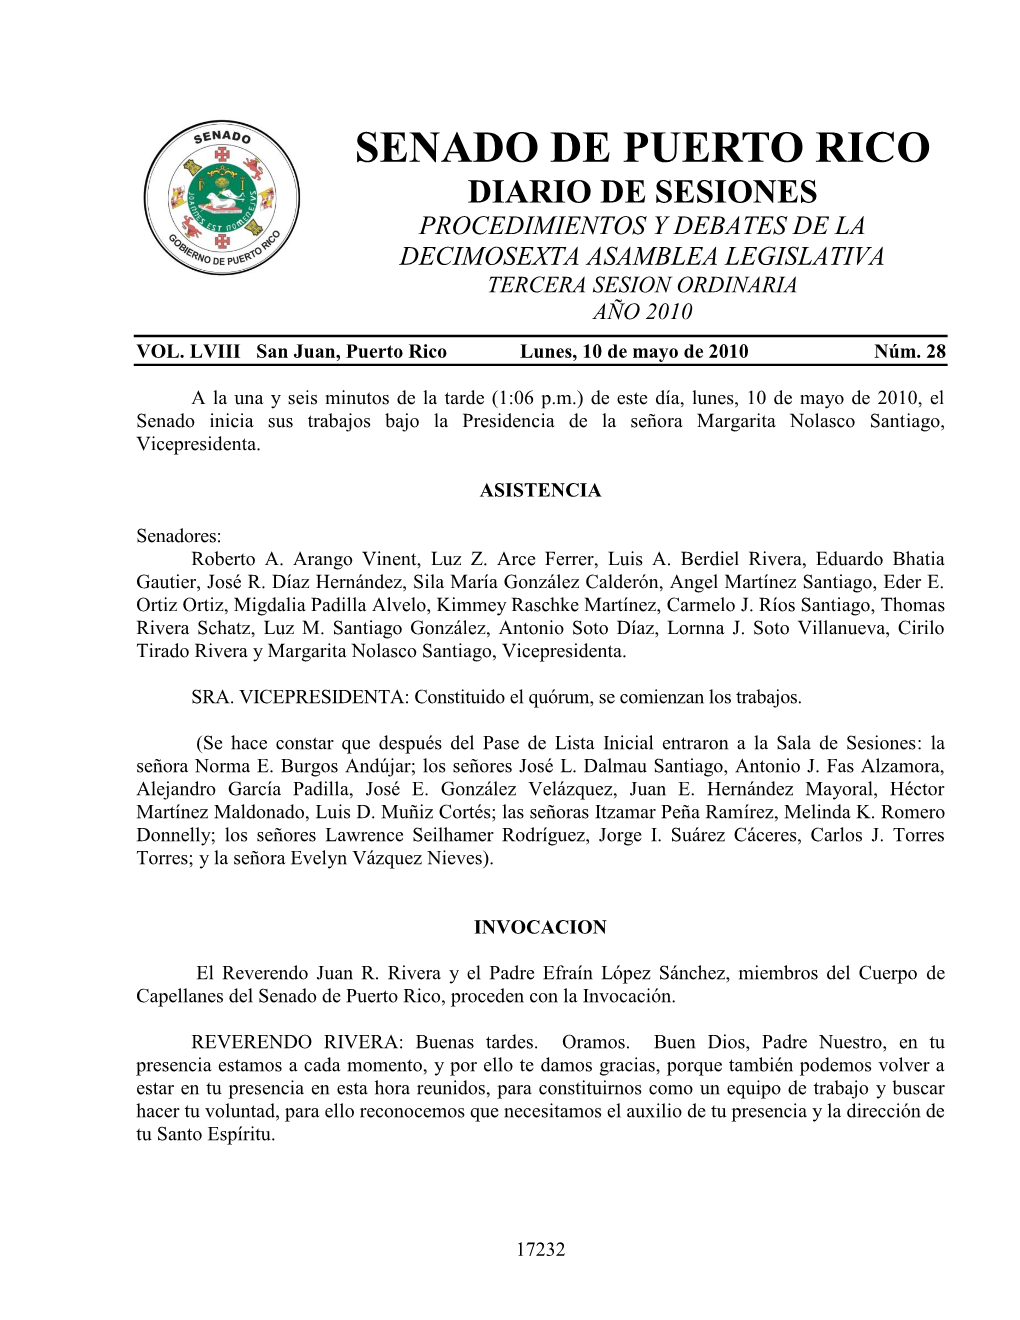 Senado De Puerto Rico Diario De Sesiones Procedimientos Y Debates De La Decimosexta Asamblea Legislativa Tercera Sesion Ordinaria Año 2010 Vol